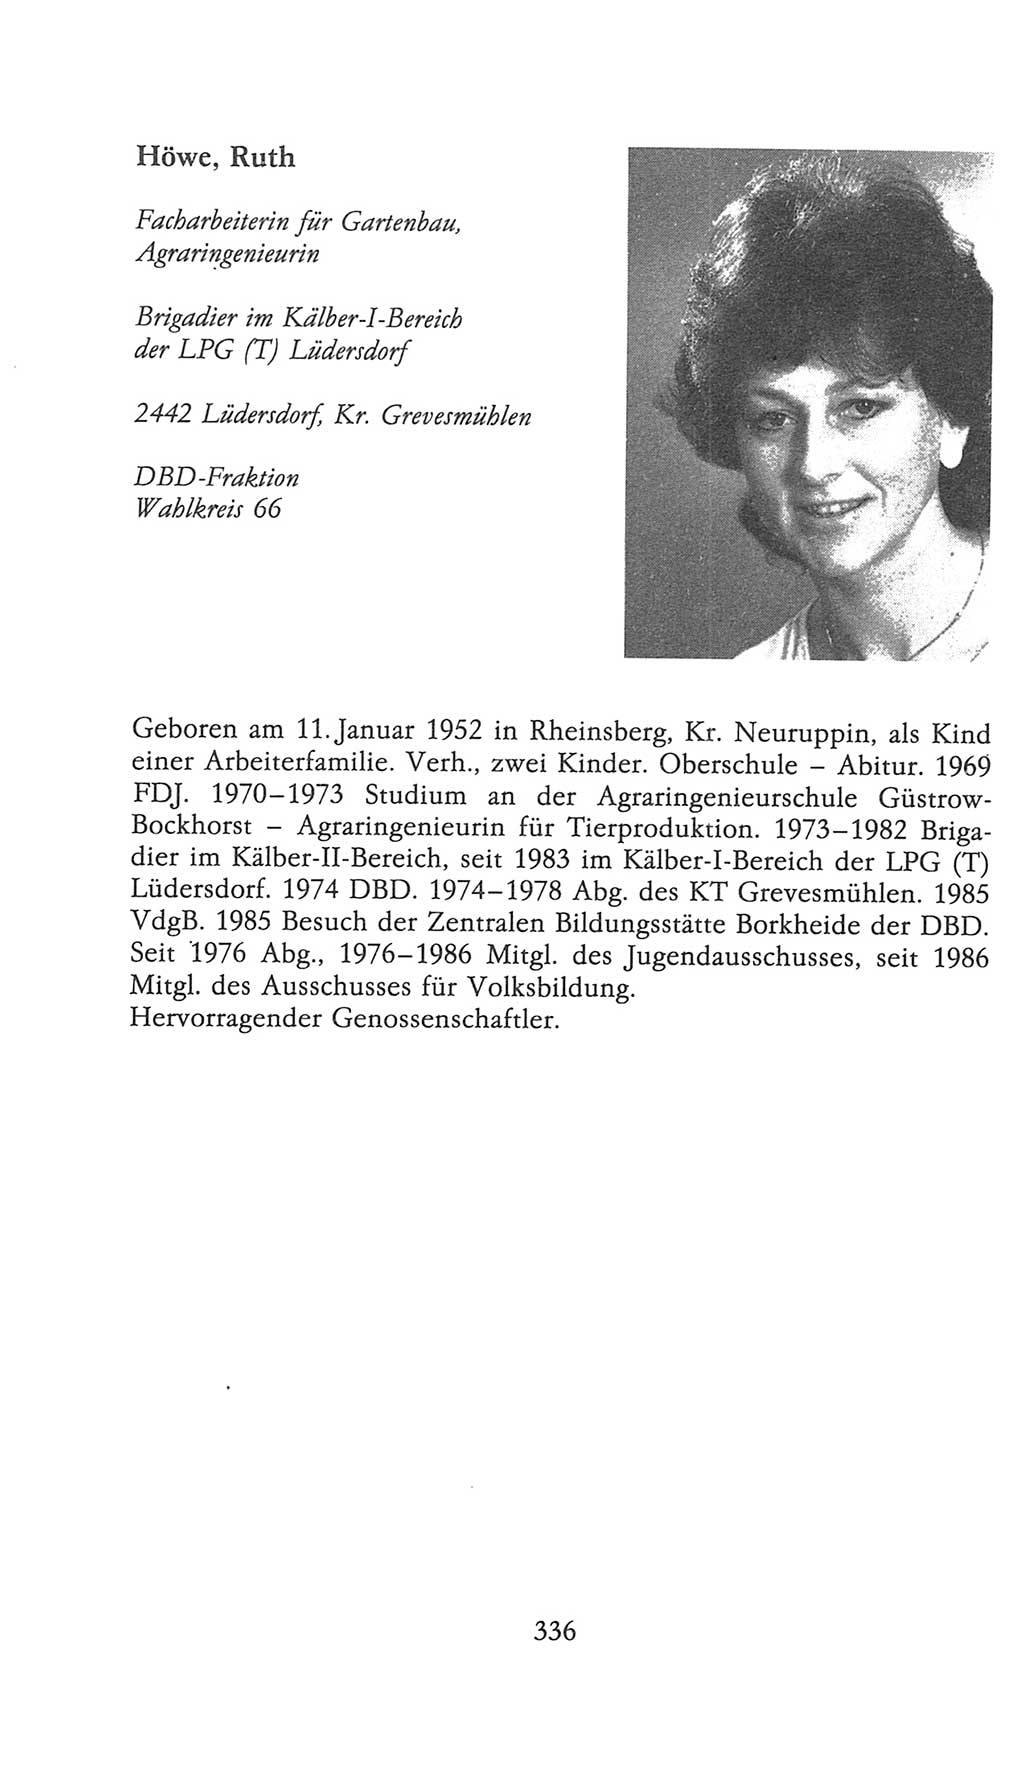 Volkskammer (VK) der Deutschen Demokratischen Republik (DDR), 9. Wahlperiode 1986-1990, Seite 336 (VK. DDR 9. WP. 1986-1990, S. 336)